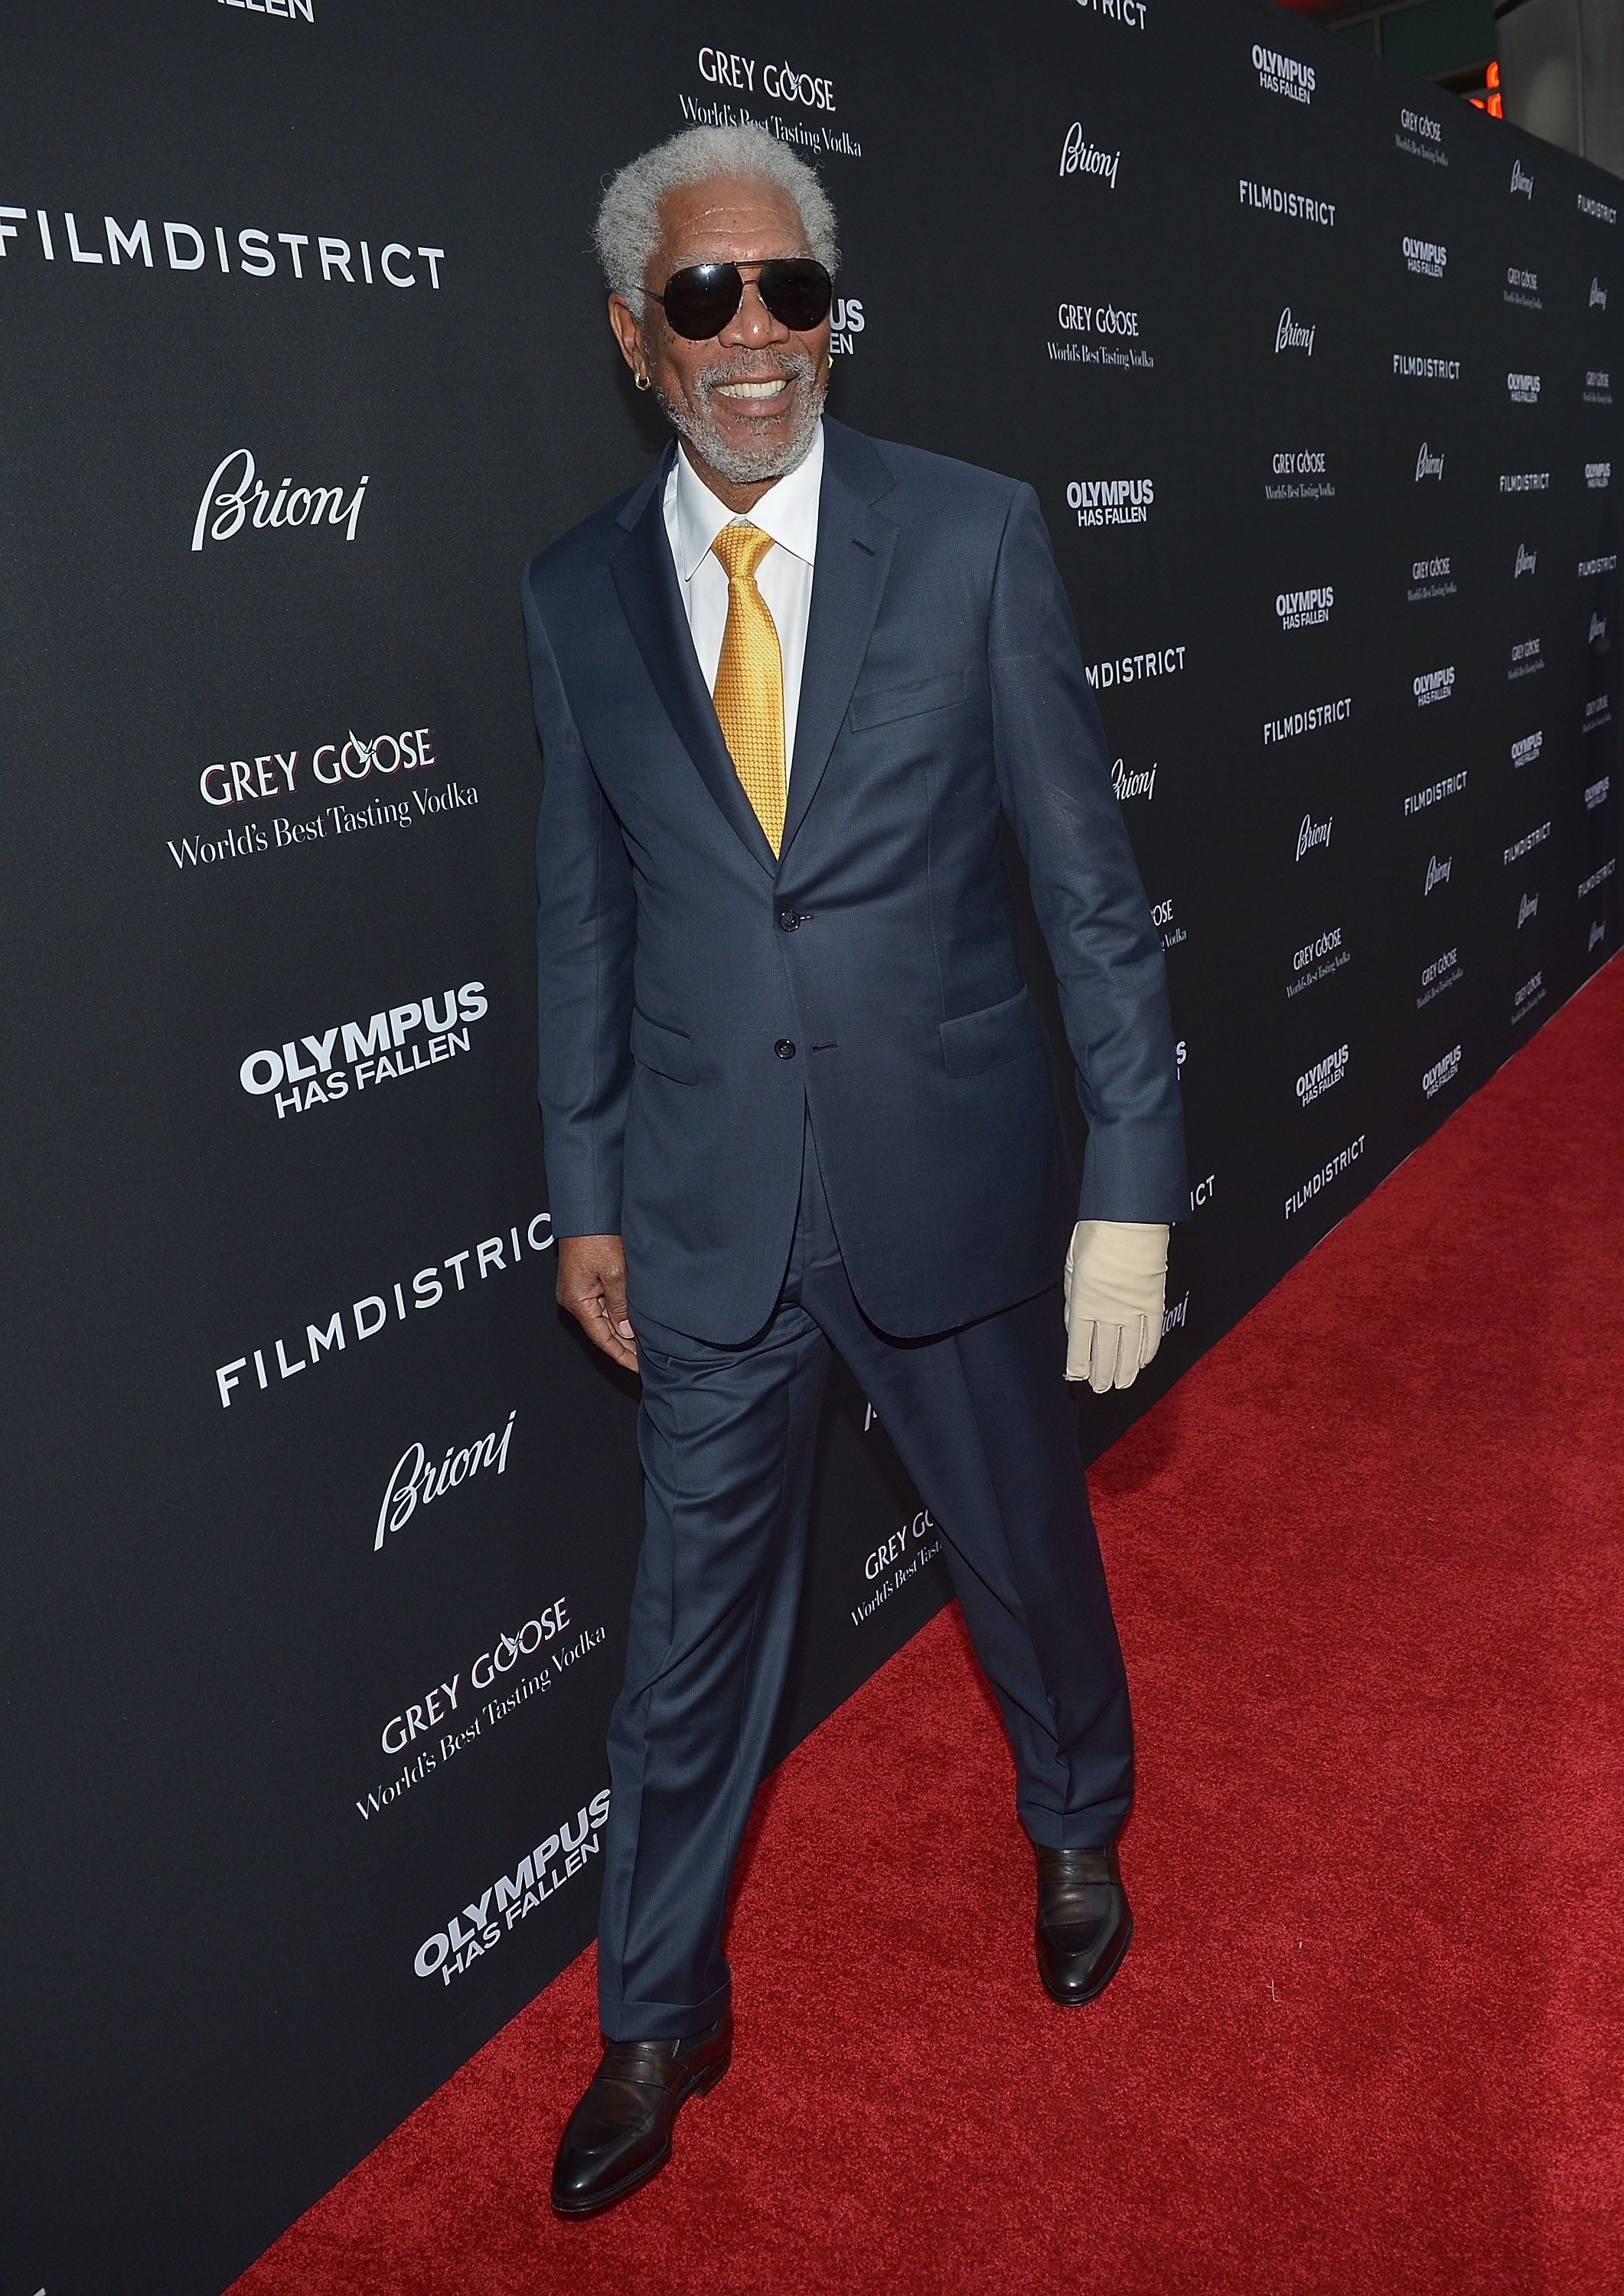 Morgan Freeman bei der Weltpremiere von "Olympus Has Fallen" im Brioni Sponsors Film District im Jahr 2013 | Quelle: Getty Images